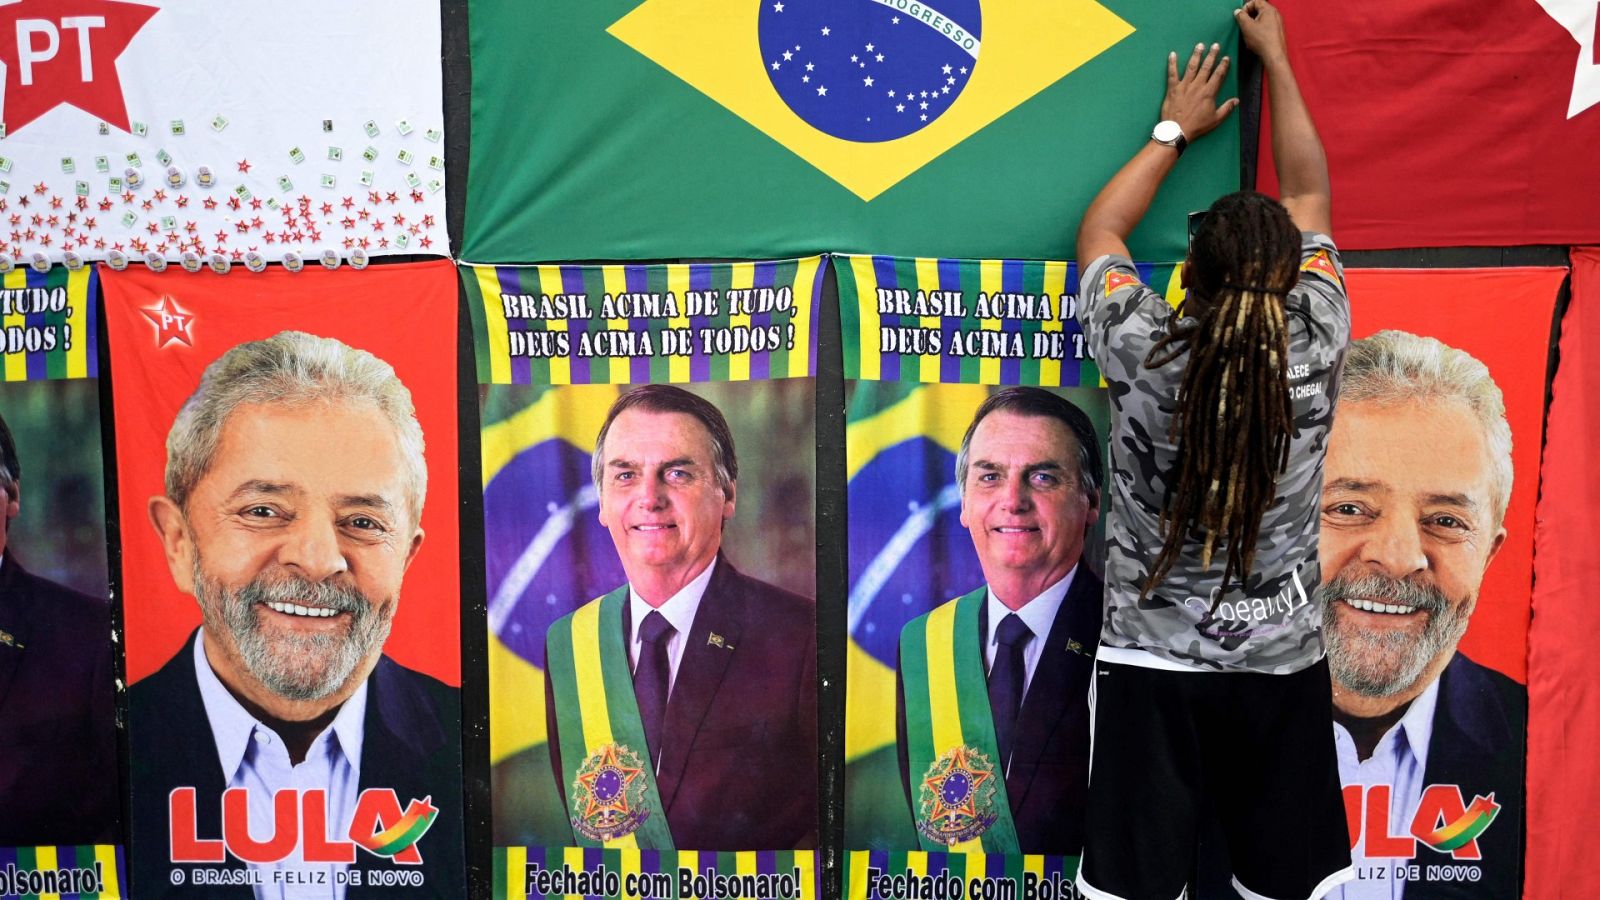 Toallas con las imágenes del presidente brasileño, Jair Bolsonaro, y el exmandatario y líder del Partido de los Trabajadores, Luiz Inácio Lula da Silva, en Brasil